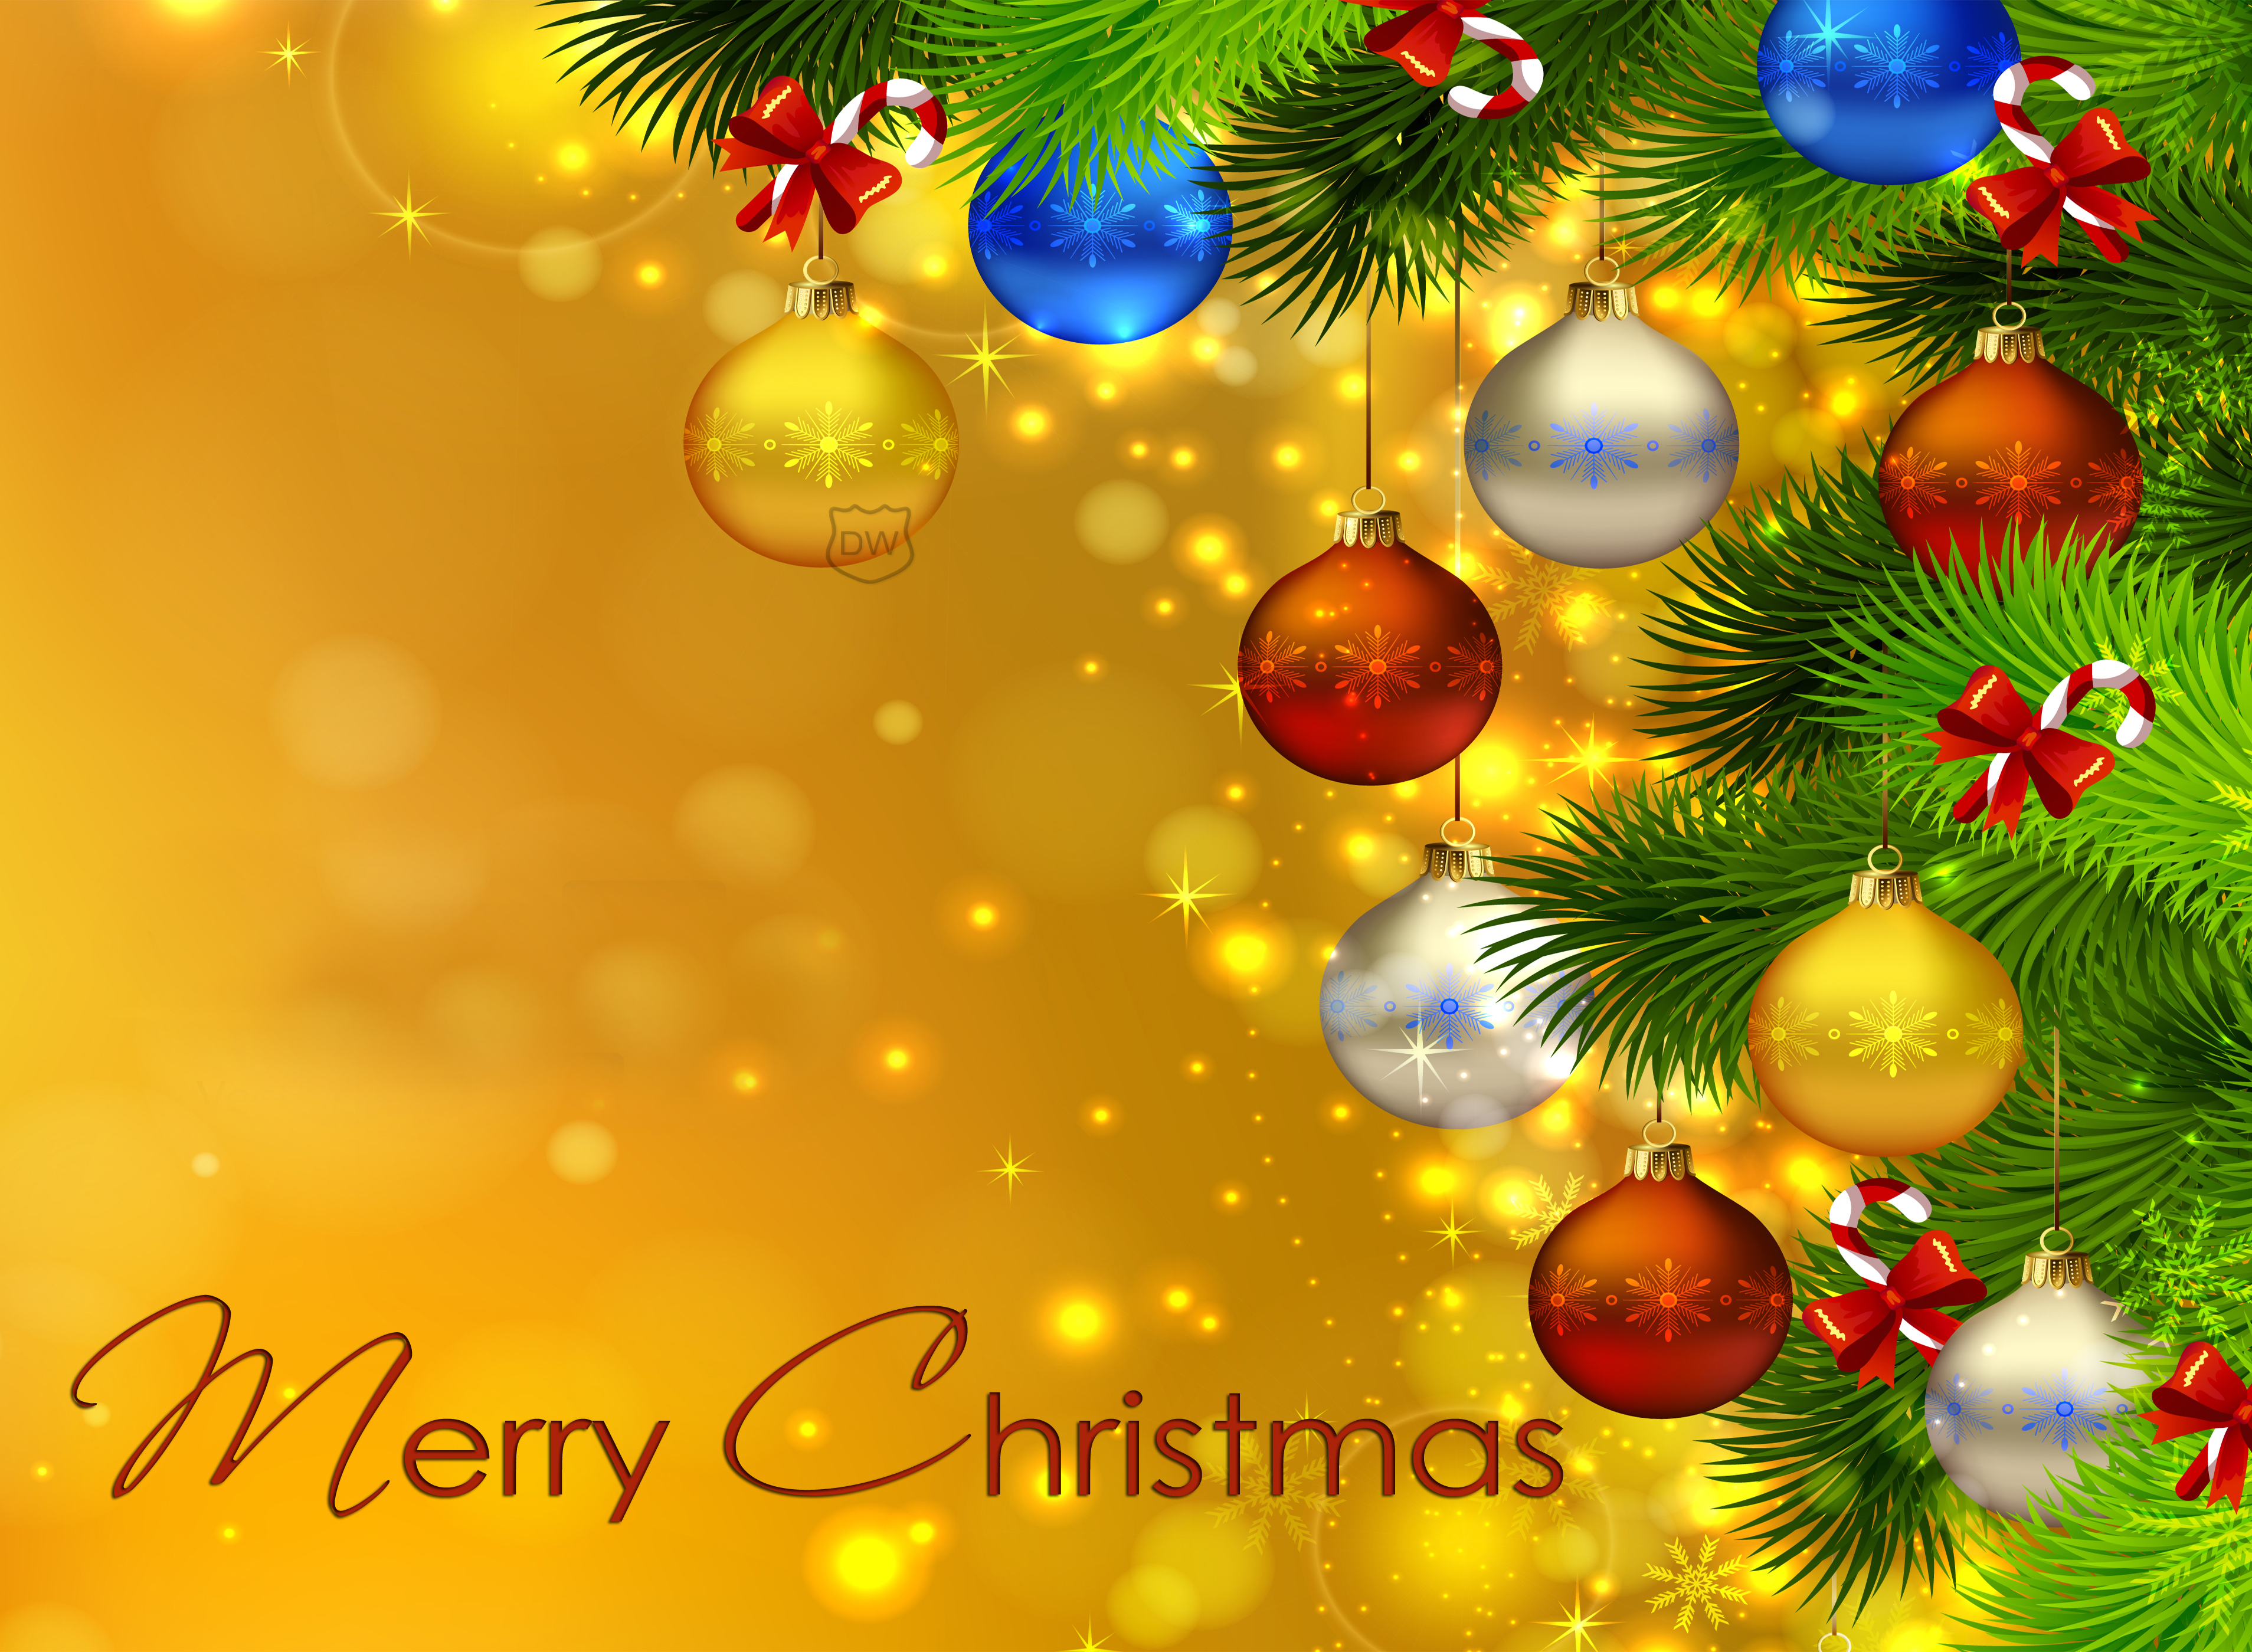 buon natale full hd wallpaper,albero di natale,ornamento di natale,decorazione natalizia,natale,albero